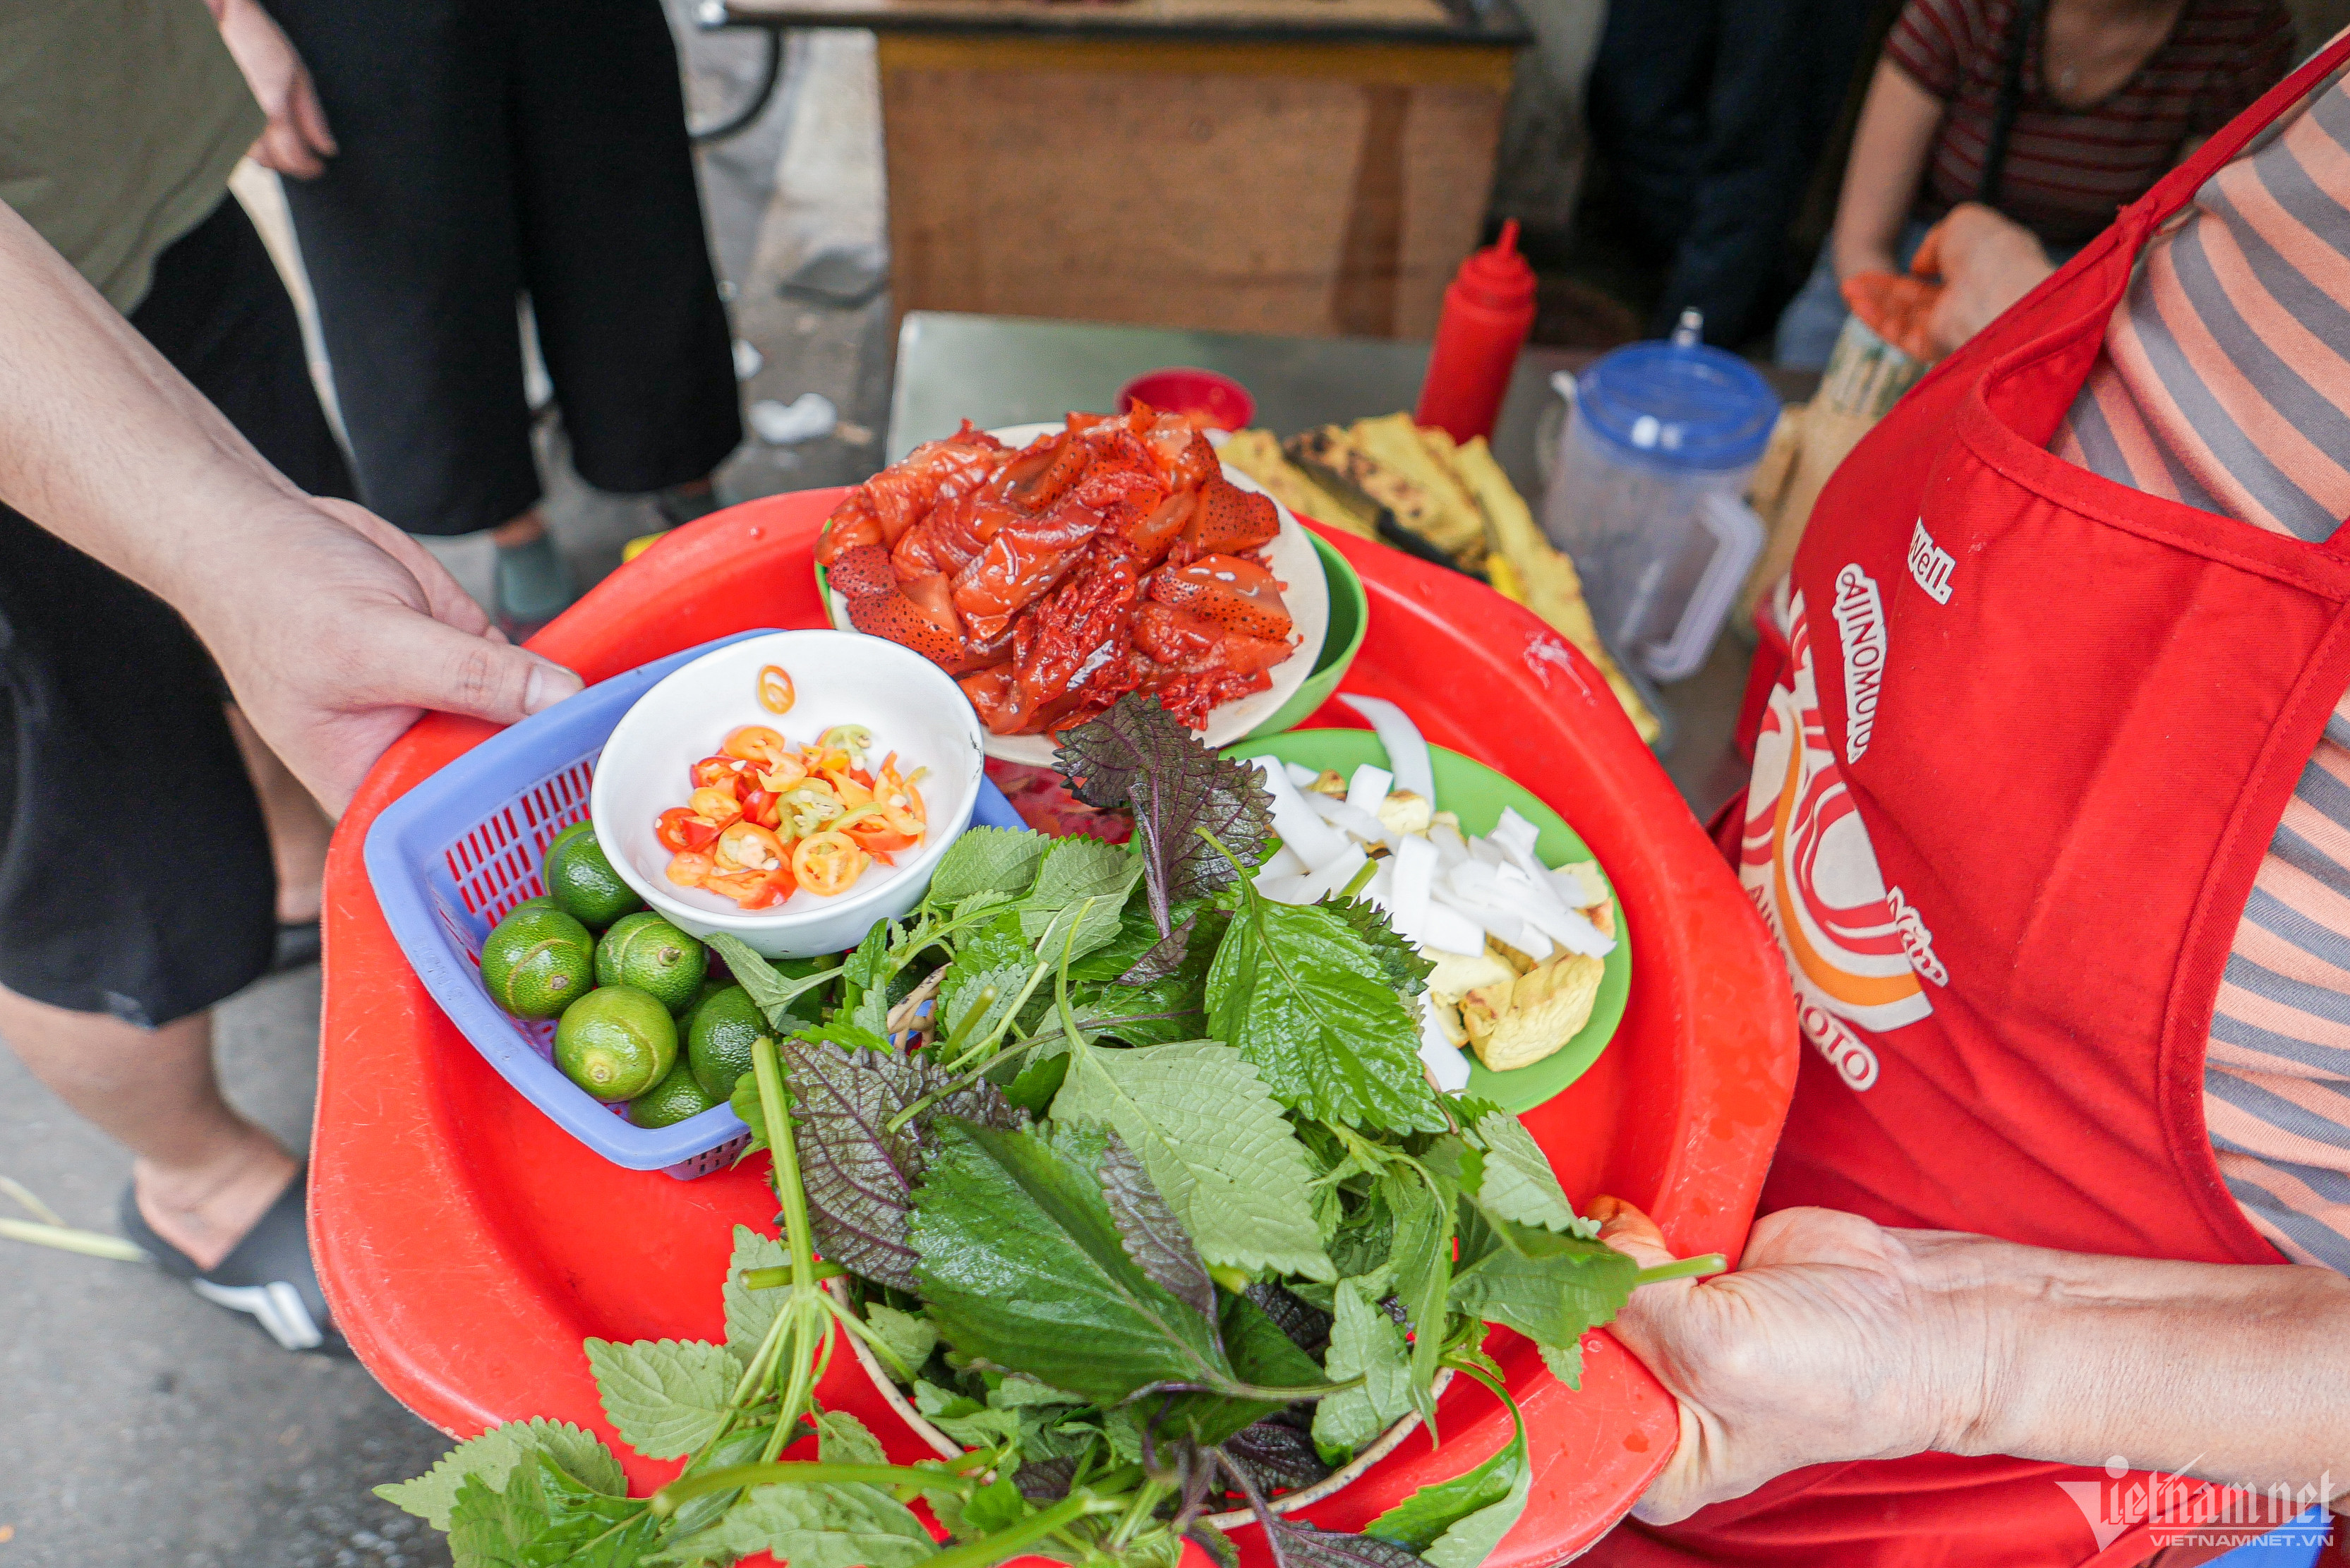 Bán 'sashimi Việt' đỏ au chấm mắm tôm, bà chủ U70 ở Hà Nội hết vèo 500 suất/ngày